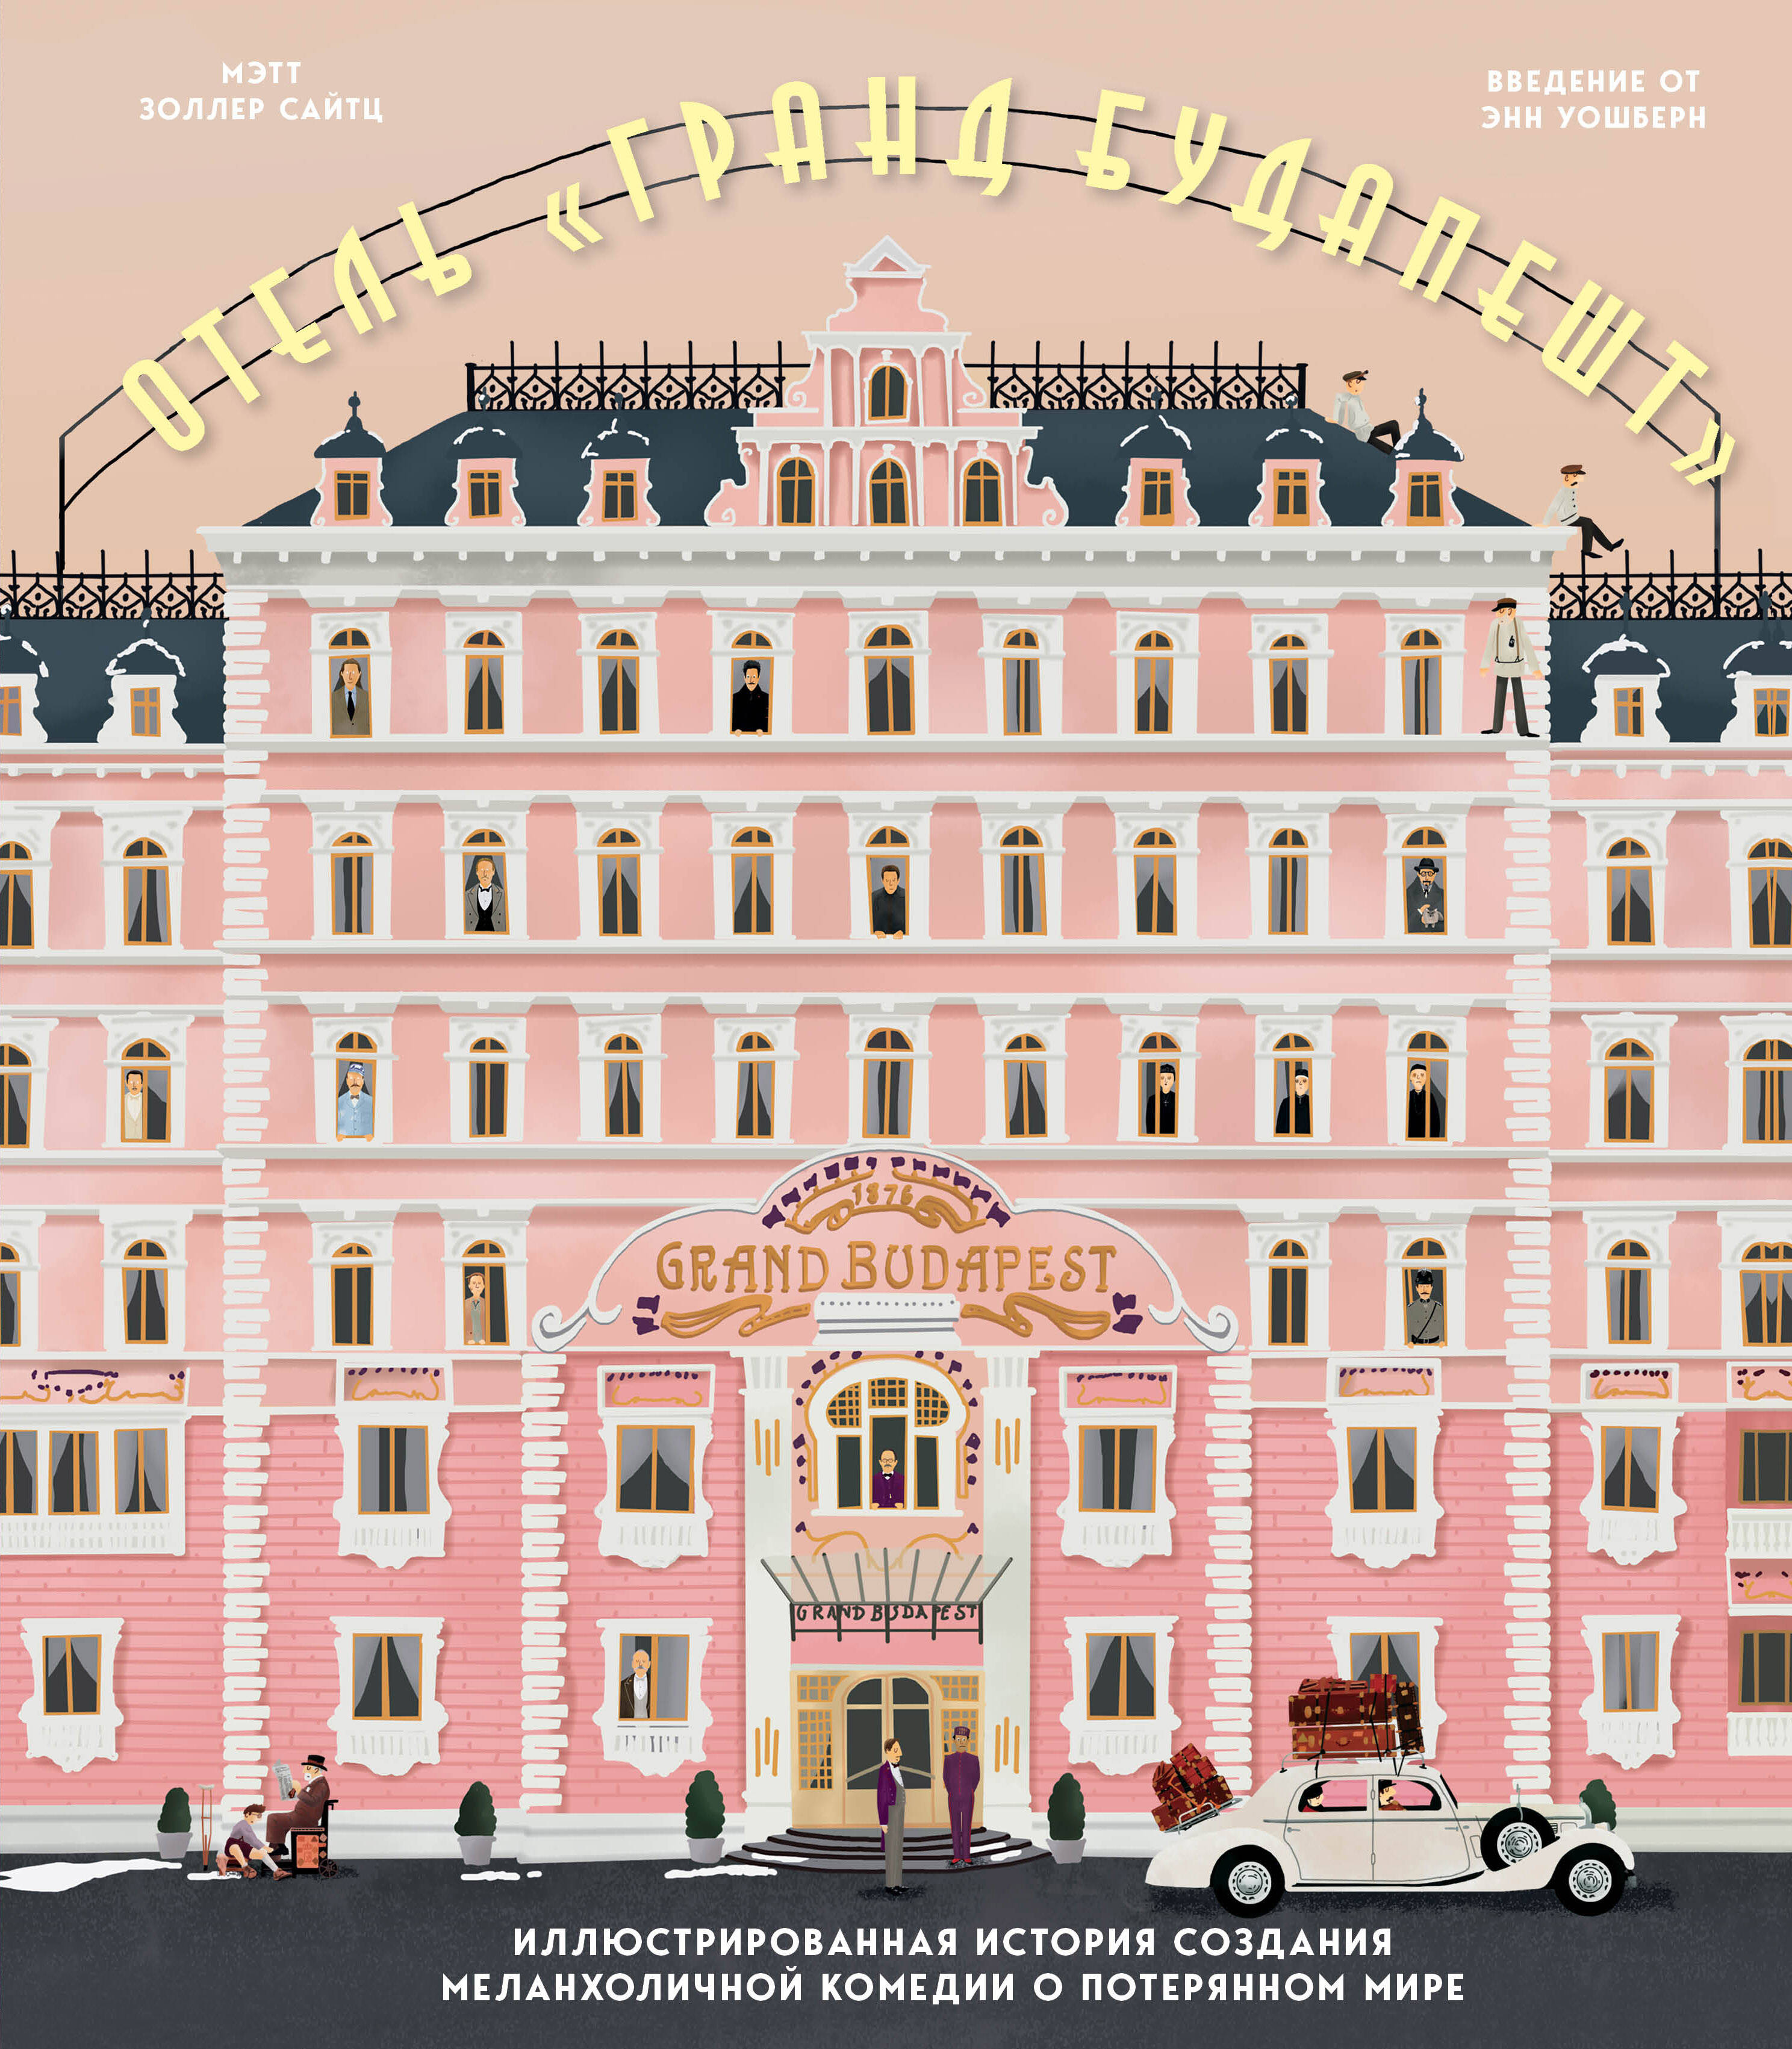 Сайтц Мэтт Золлер Отель Гранд Будапешт. Иллюстрированная история создания меланхоличной комедии о потерянном мире